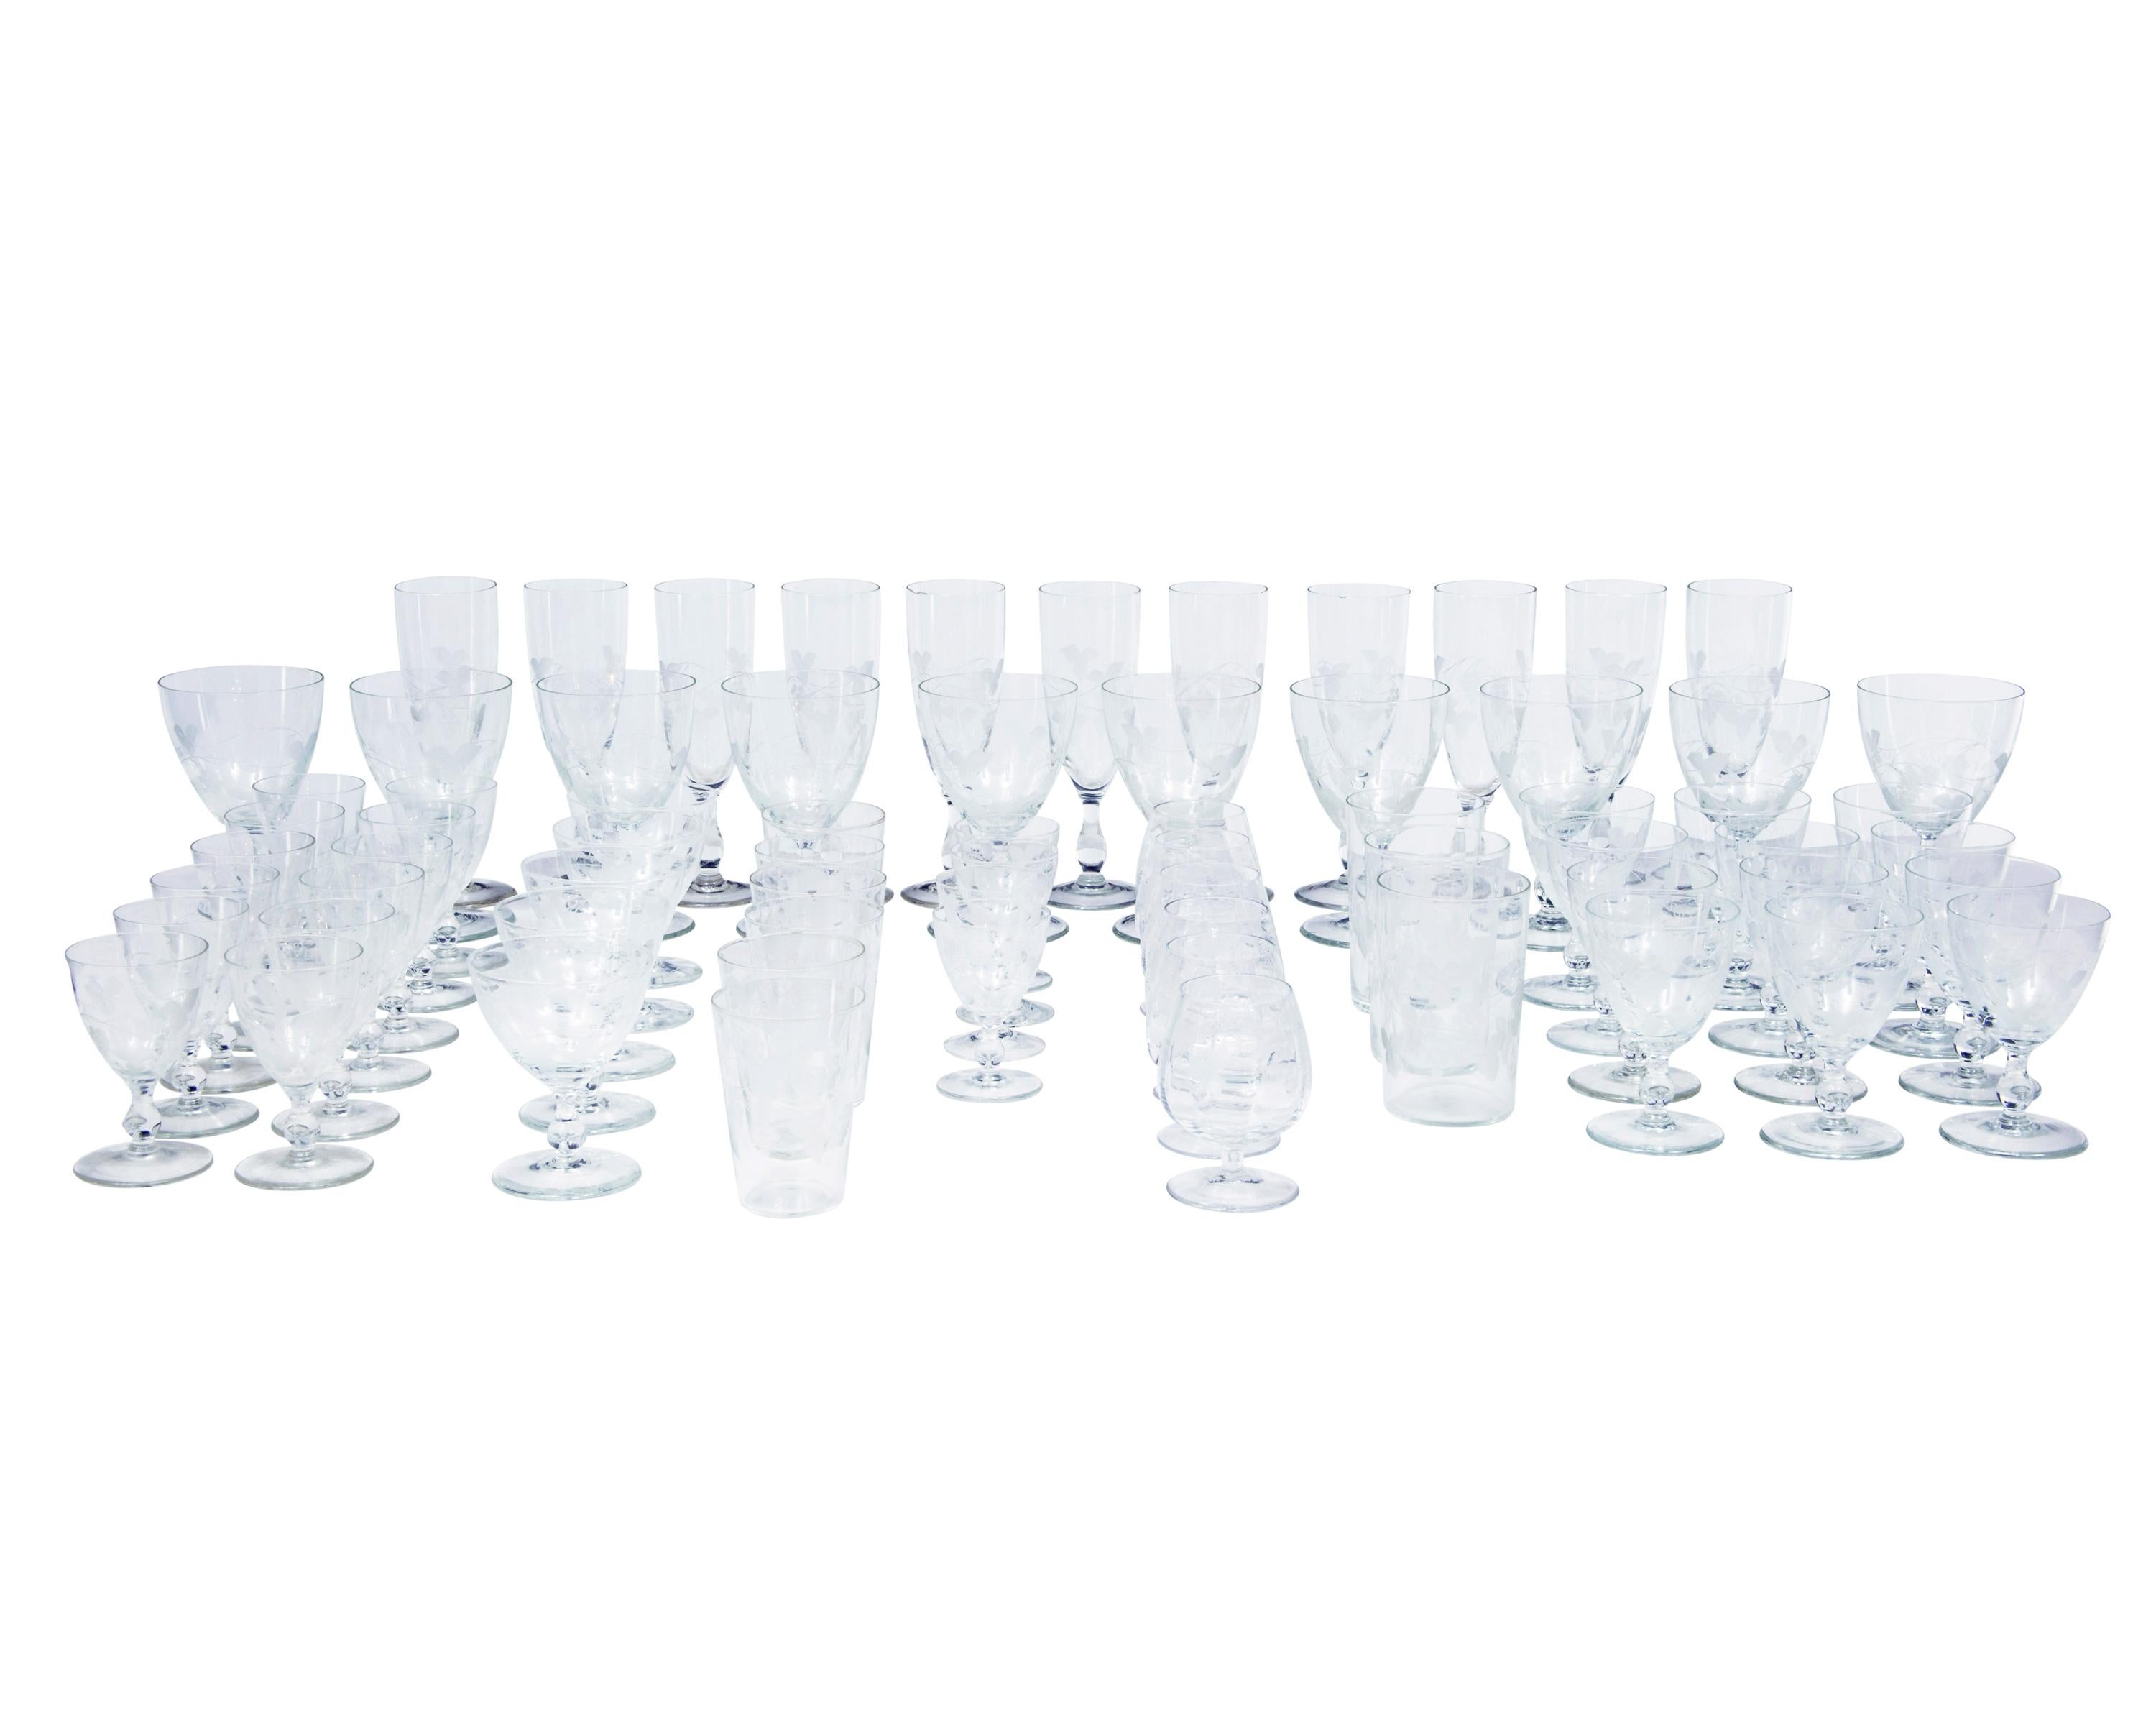 Eine schöne Sammlung von Riihimaki Savoy Gläsern aus den 1930er Jahren mit geätzten Rebstöcken, bestehend aus 69 Gläsern des bekannten finnischen Herstellers Riihimaki.

11 Champayne-Flöten

10 große Weingläser

12 kleine Weingläser

12